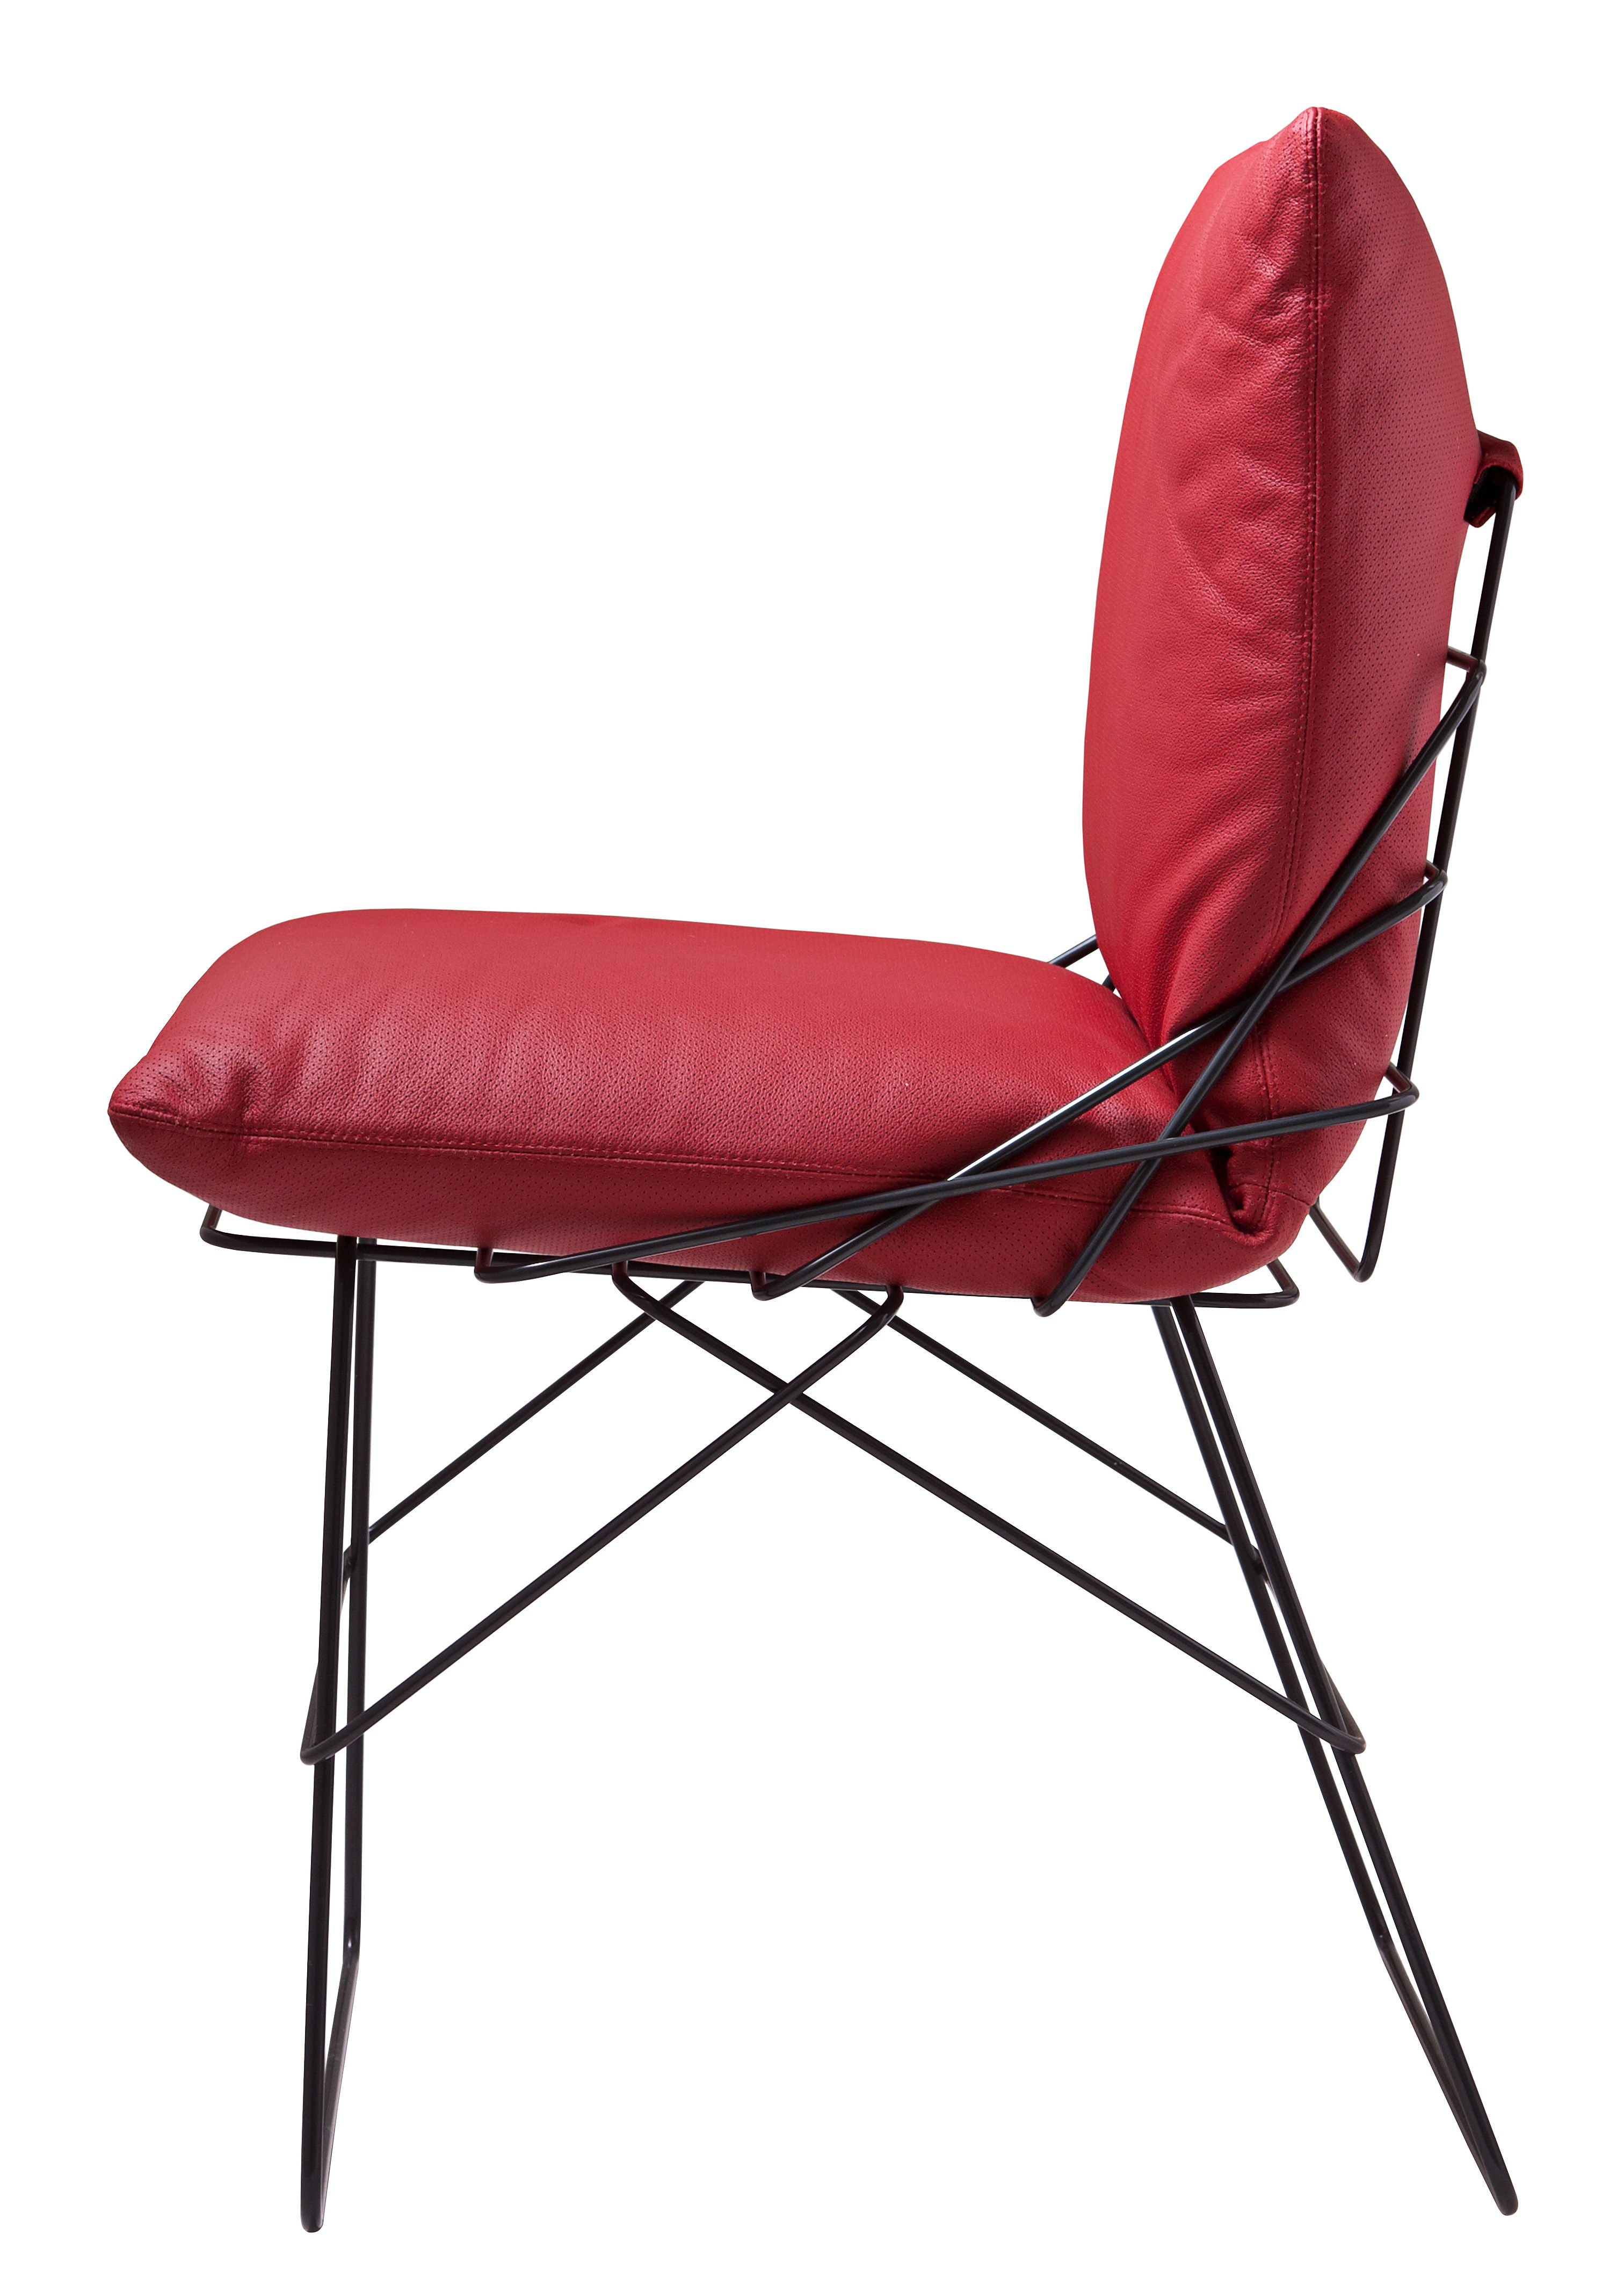 Chaise rembourrée Sof-Sof / Réédition 1972 - Driade rouge en cuir